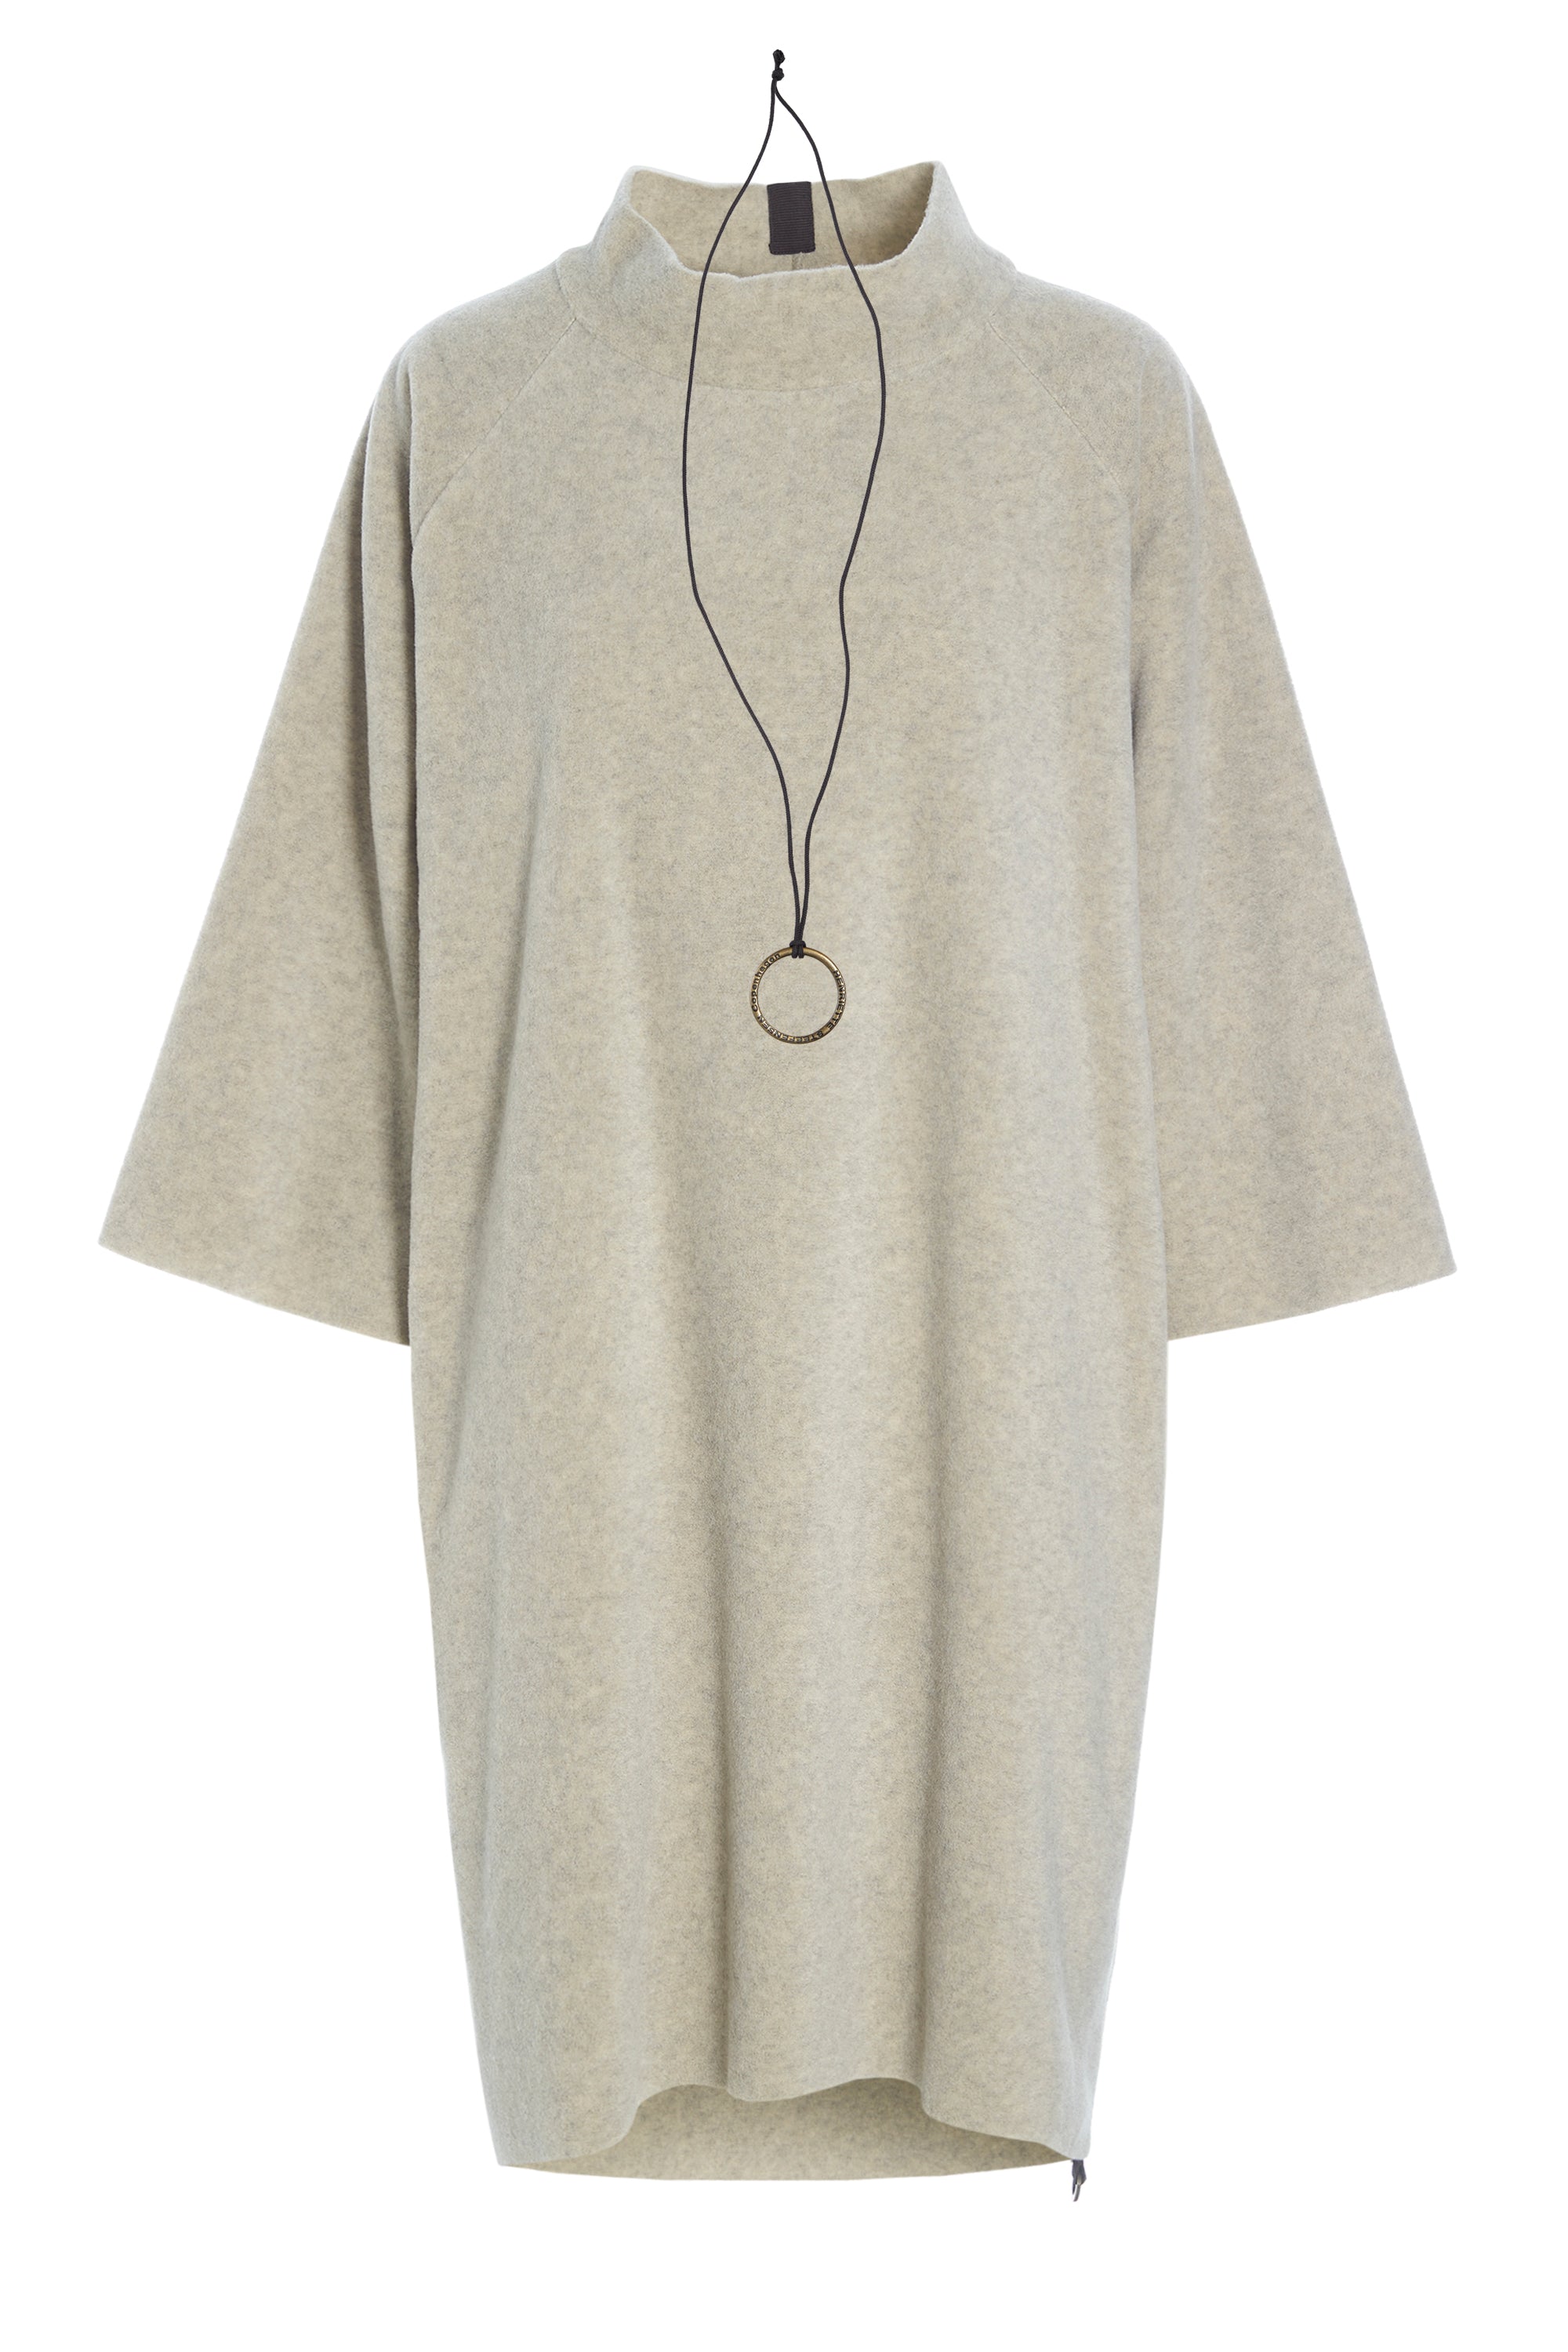 HENRIETTE STEFFENSEN COPENHAGEN DRESS HIGH NECK - 3243 DRESSES fleece SAND 805